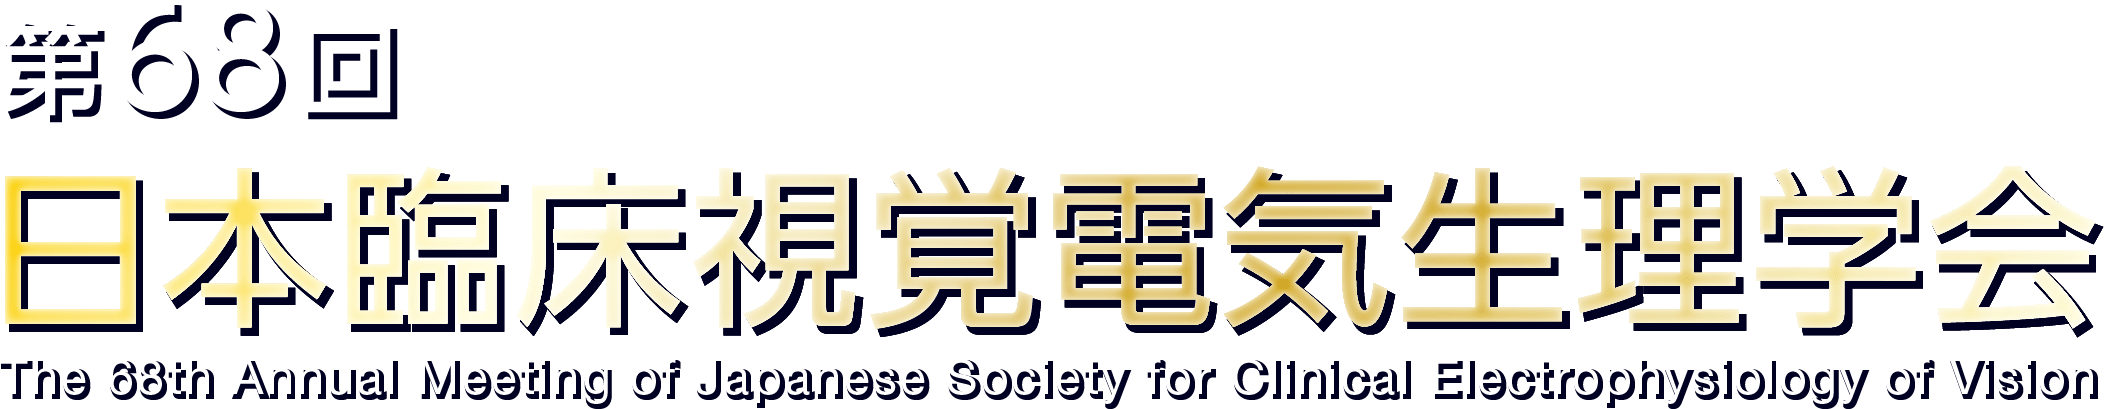 第68回日本臨床視覚電気生理学会 The 68th Annual Meeting of Japanese Society for Clinical Electrophysiology of Vision